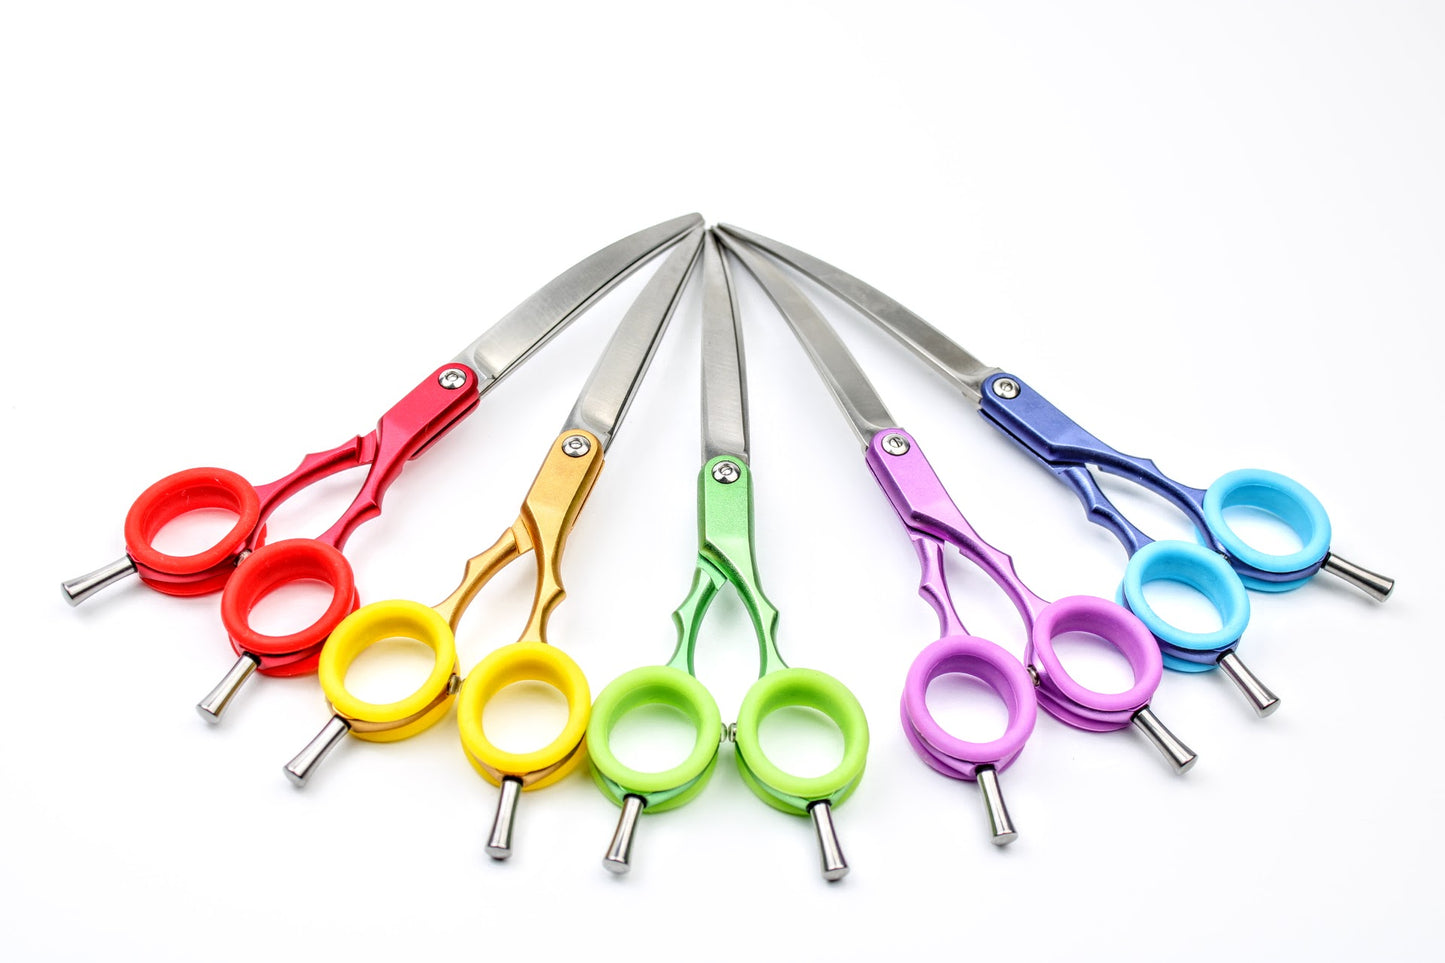 Asta, 6.5" asian fusion curved scissors(Right Hand)Aluminium Handle, 440c Steel Blades.